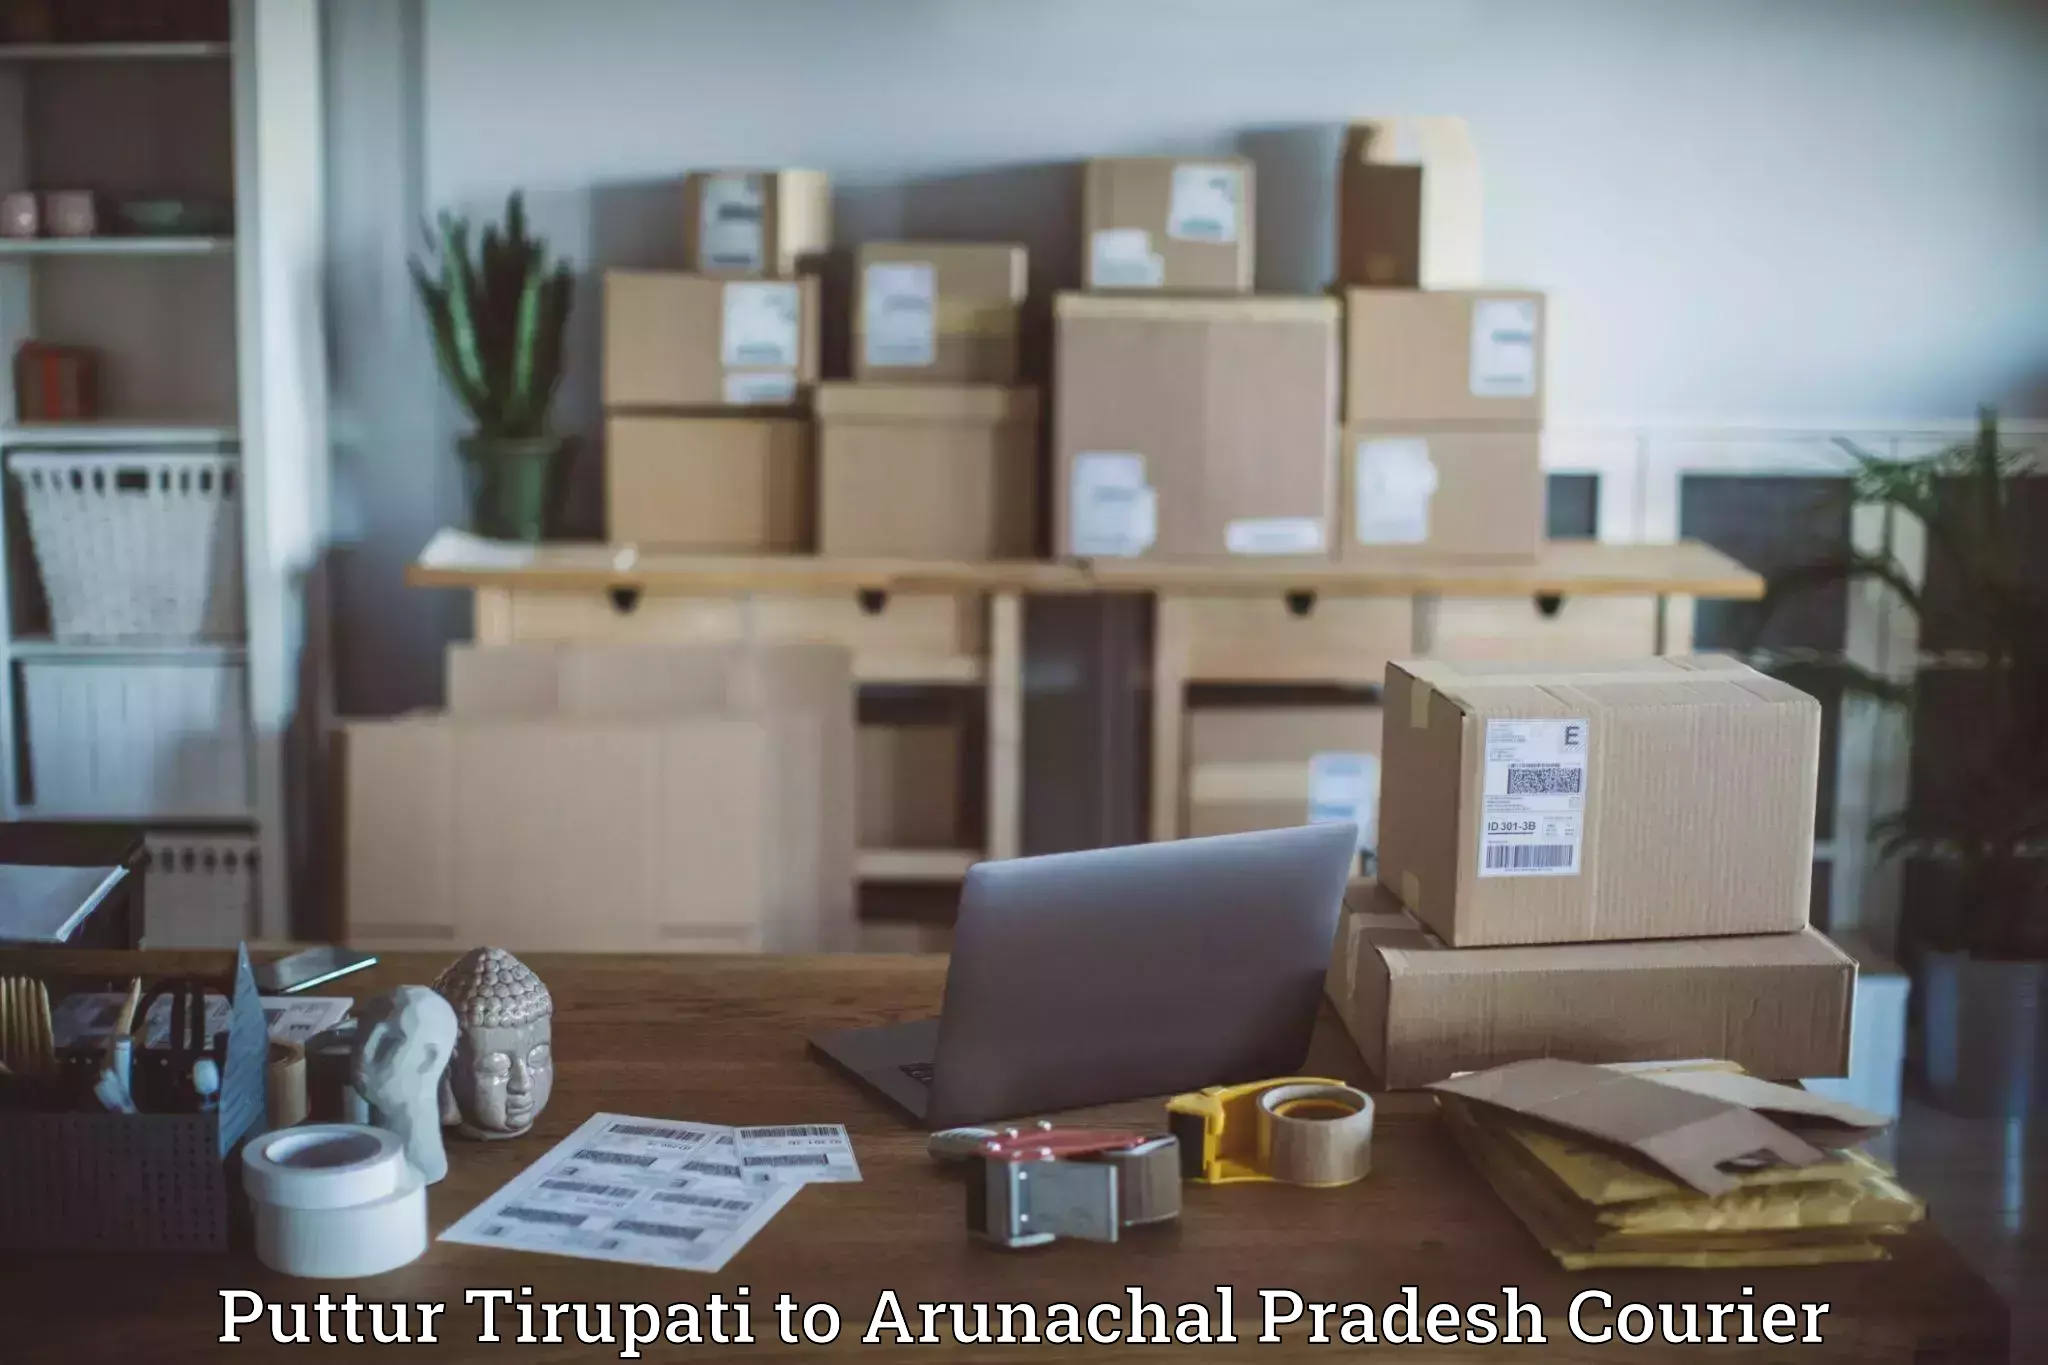 Doorstep delivery service Puttur Tirupati to Aalo